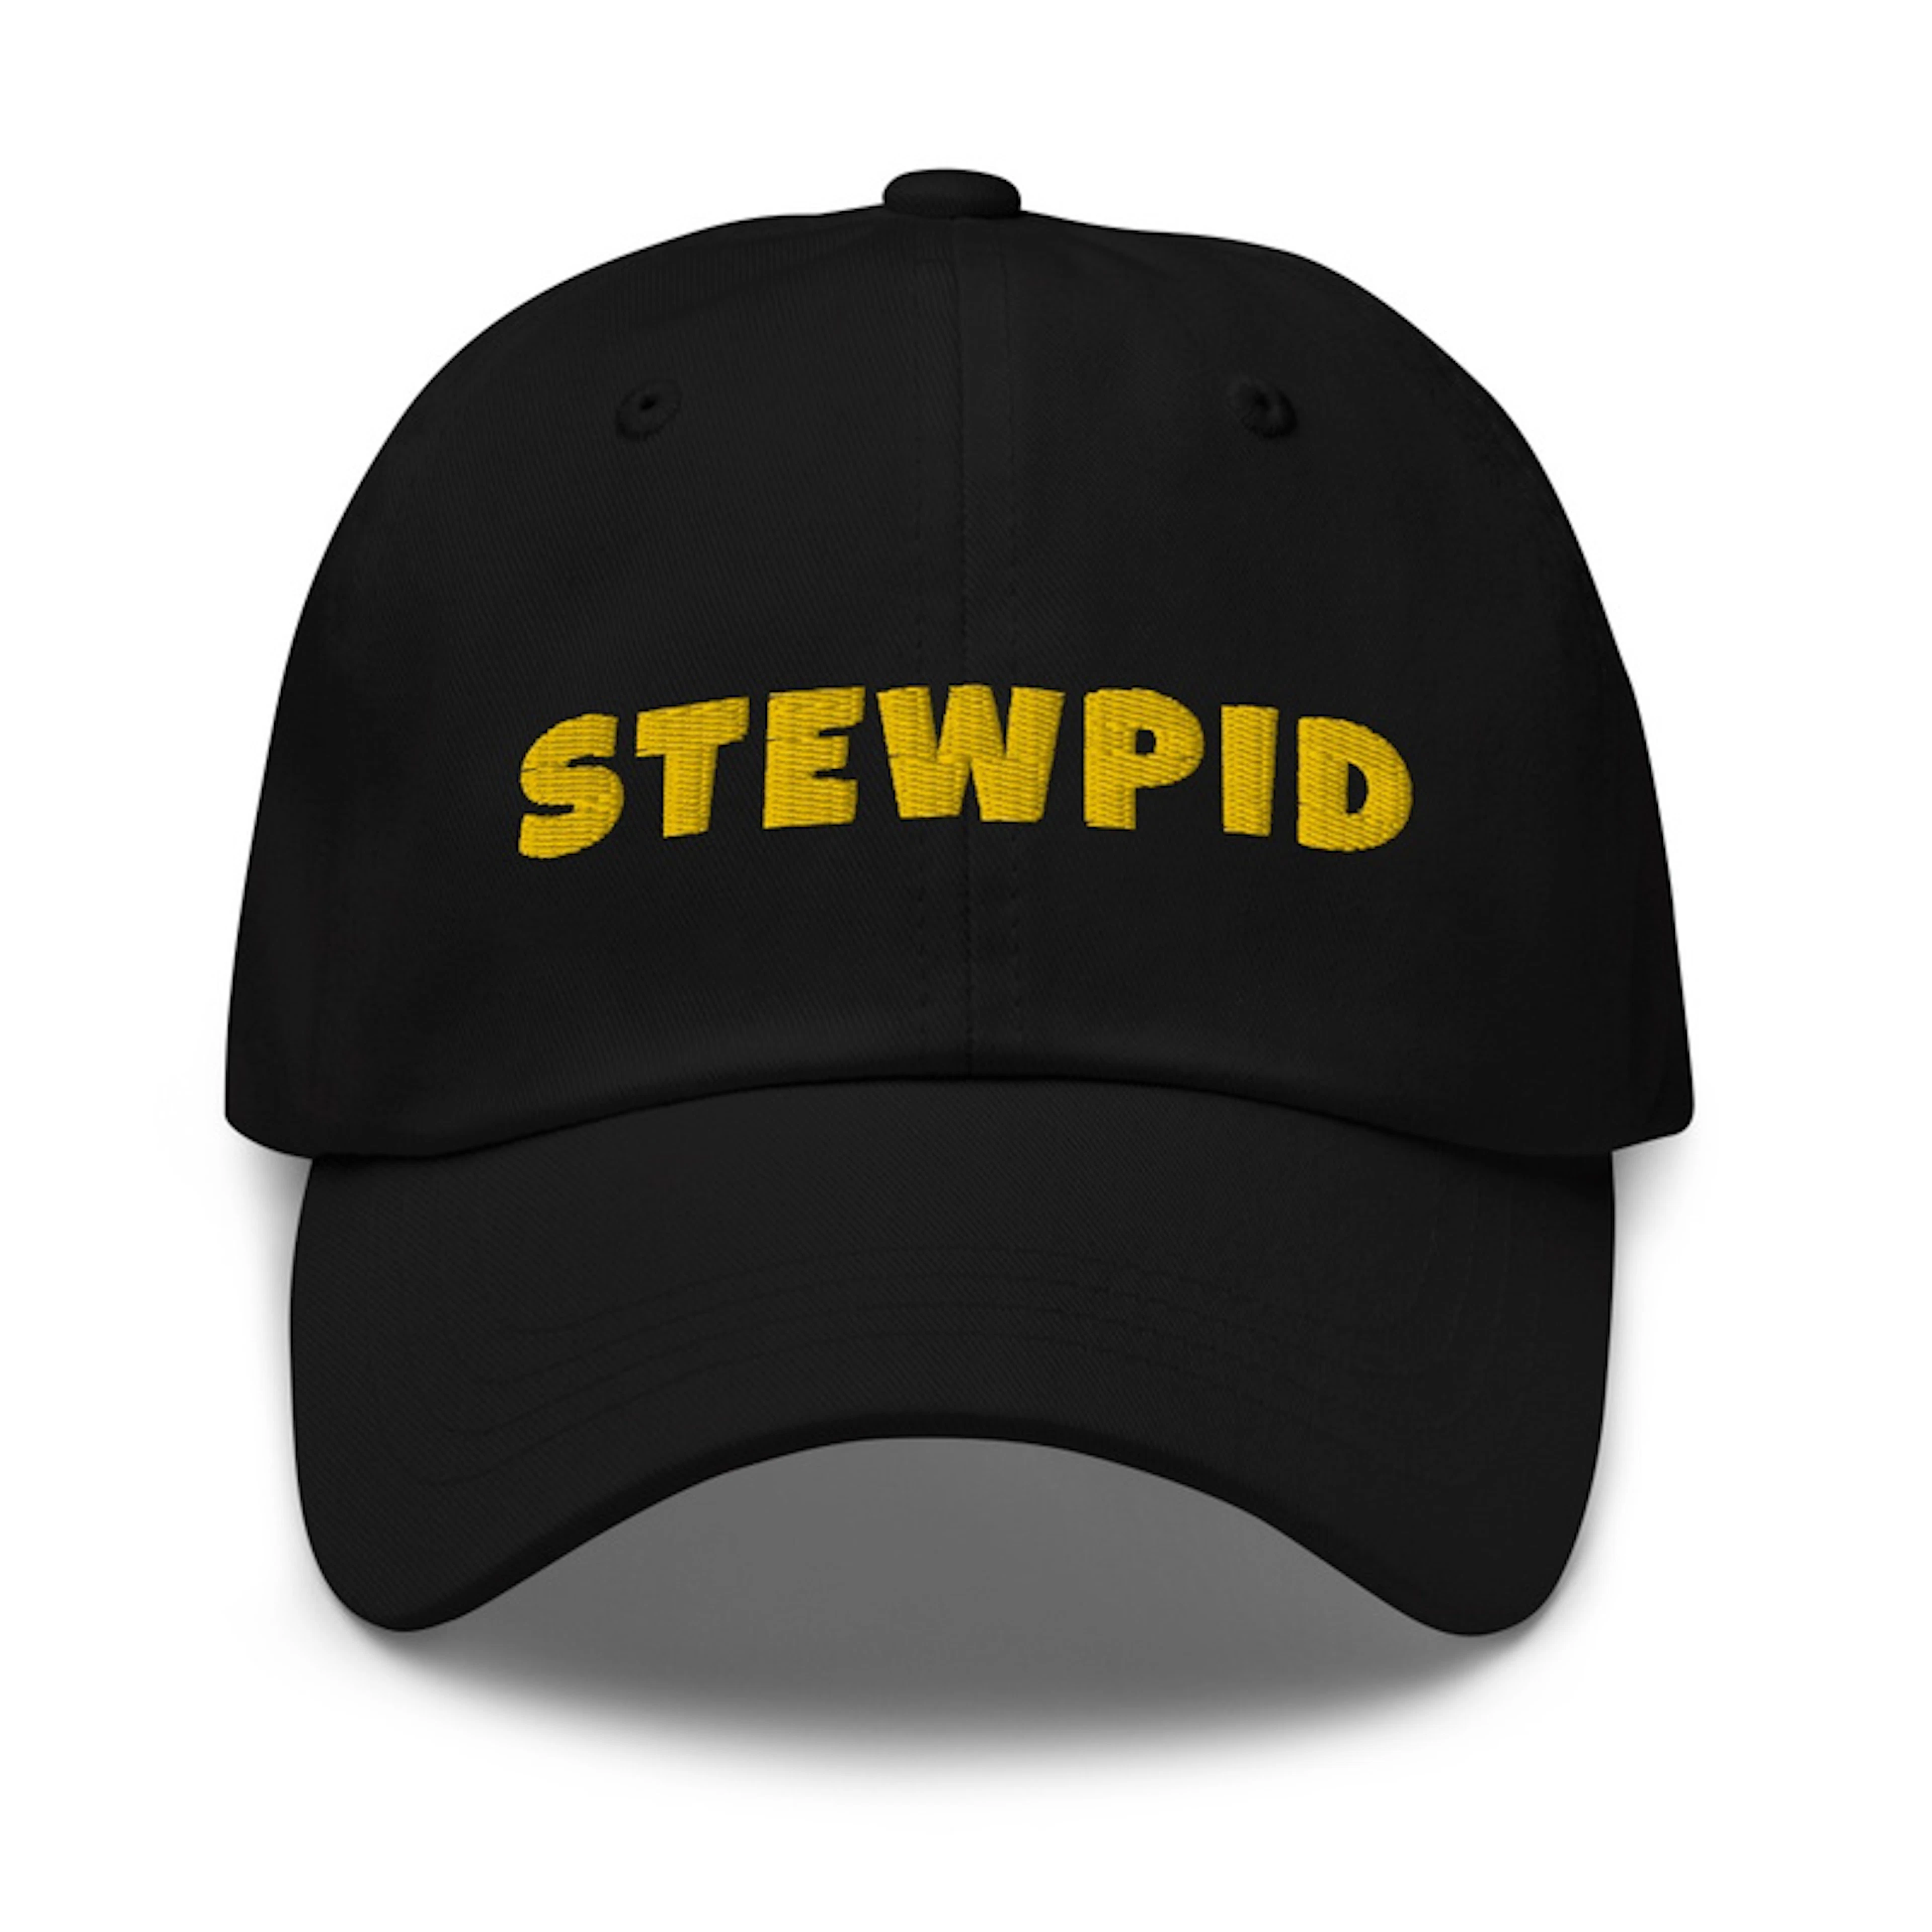 stewpid hat